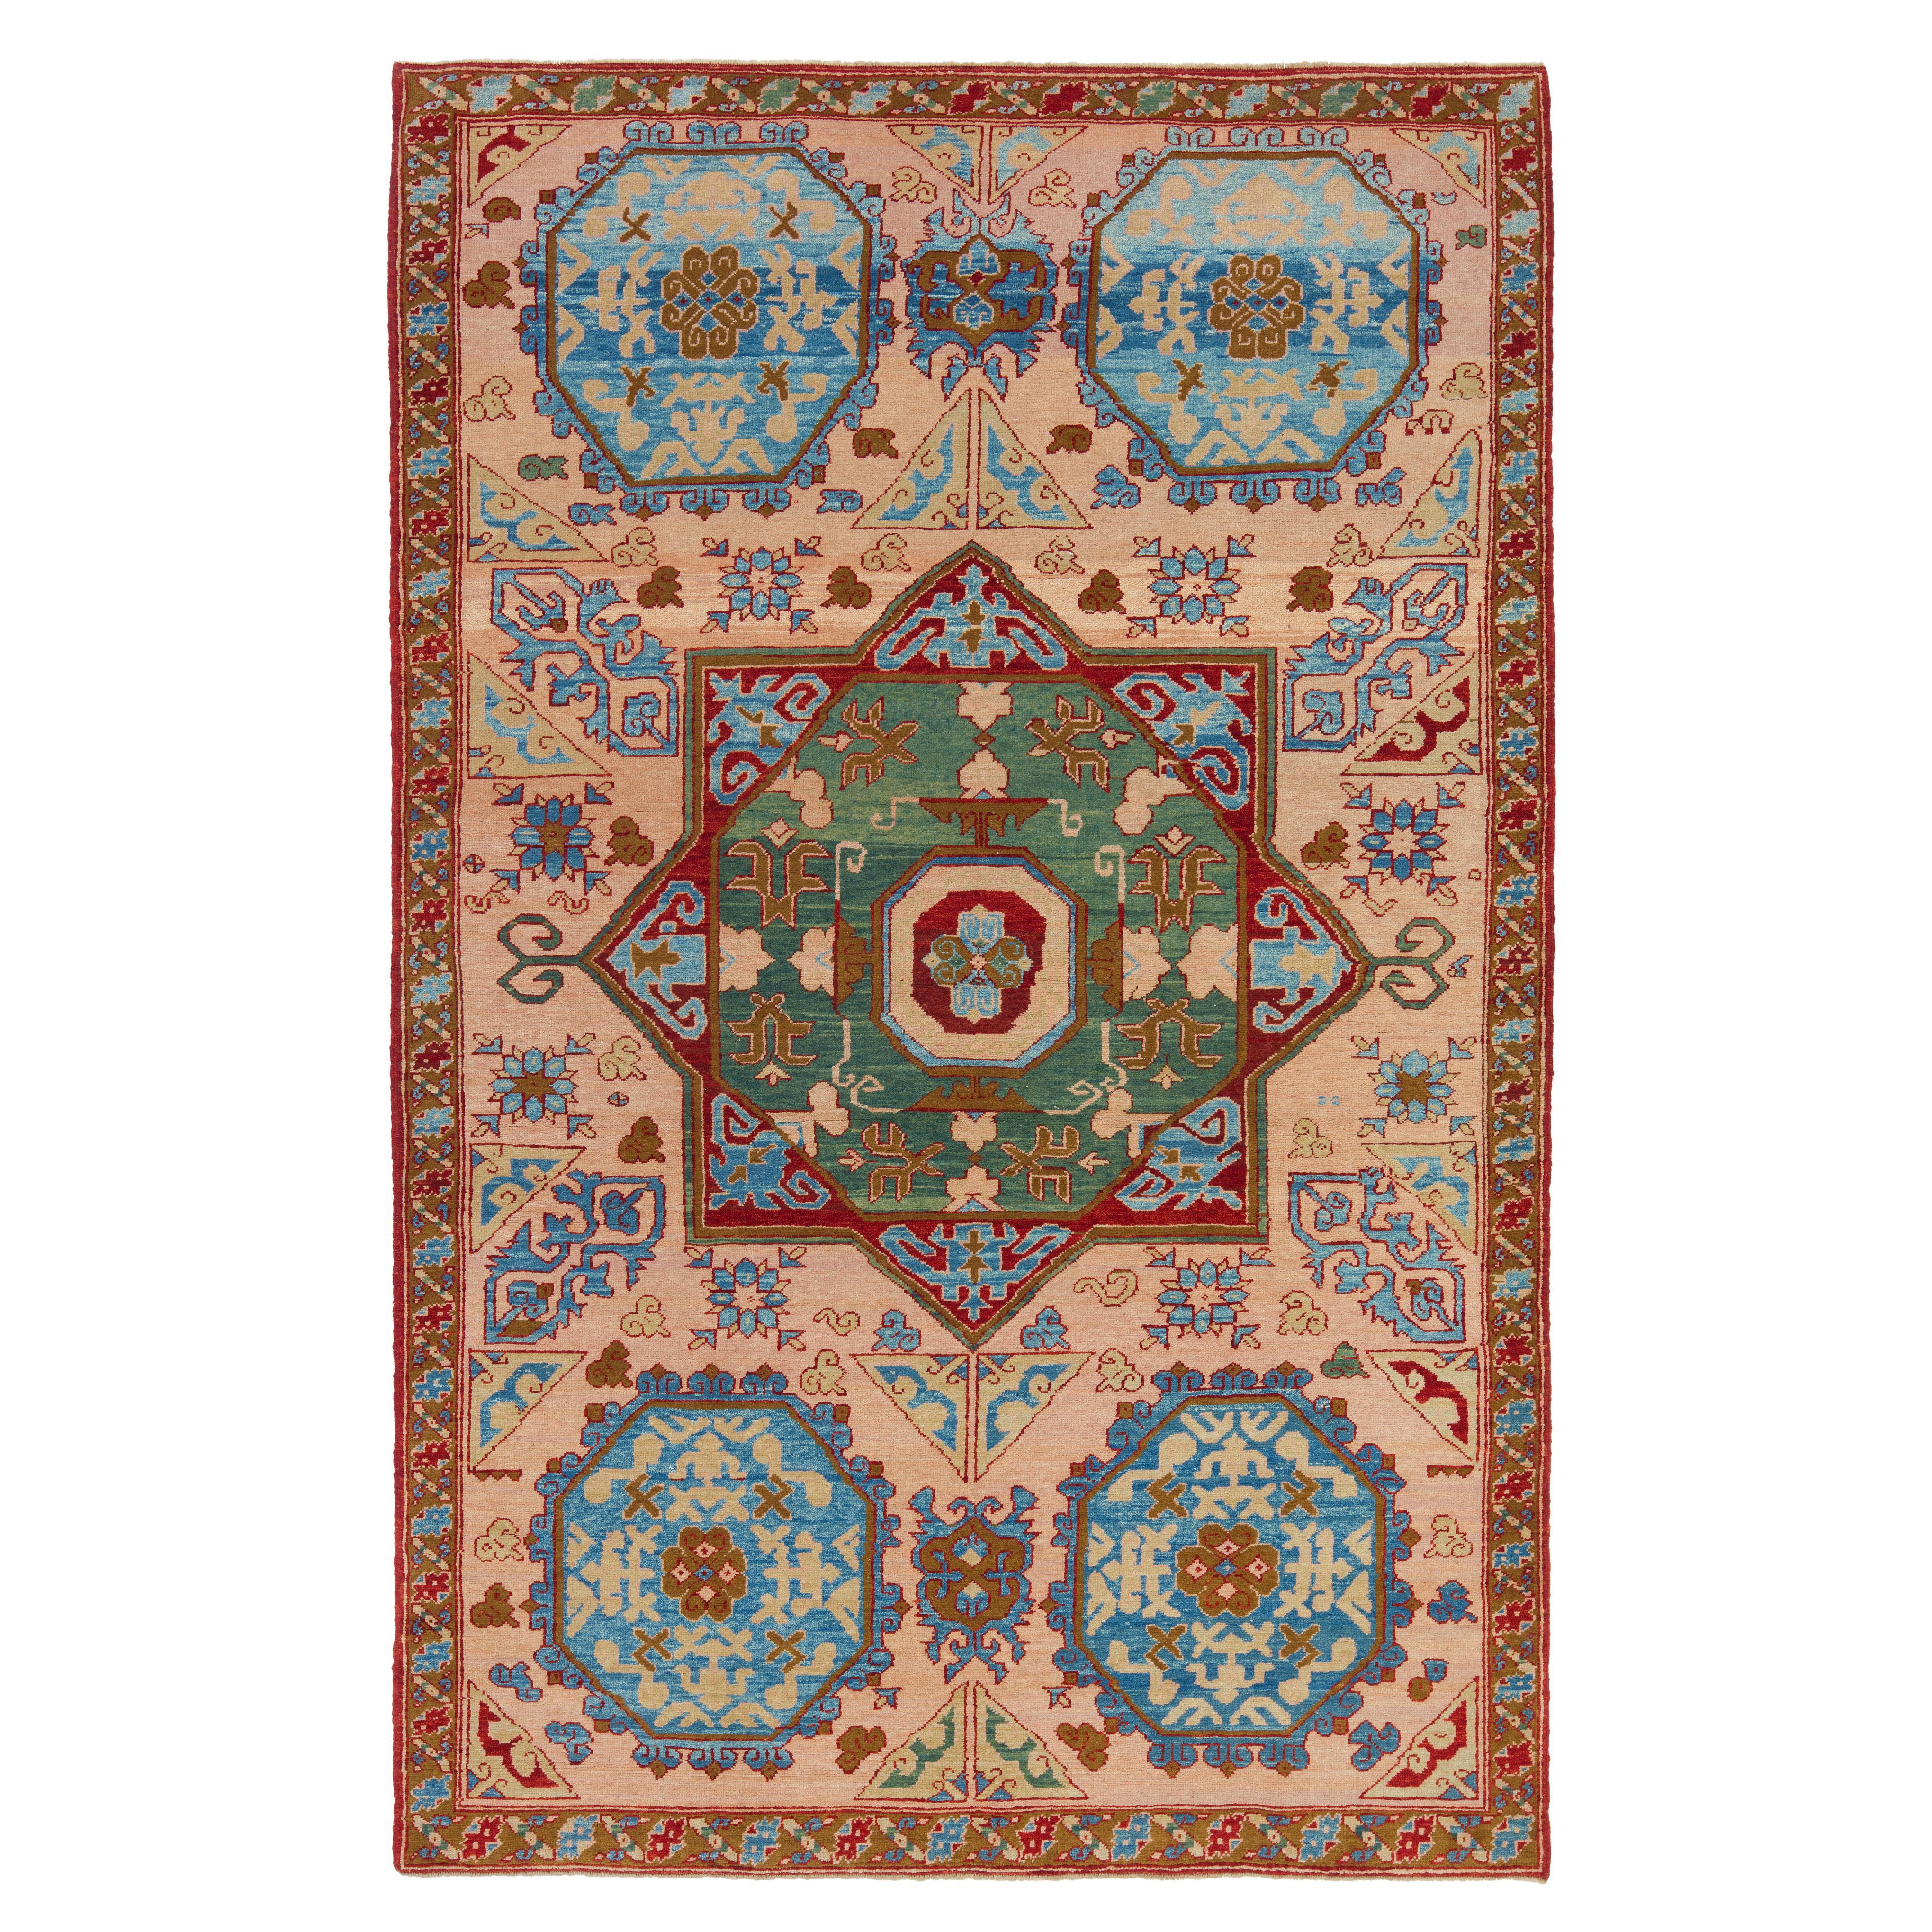 Ararat Teppich Star and Octagon Medaillon Teppich Anatolian Revival Teppich natürlich gefärbt